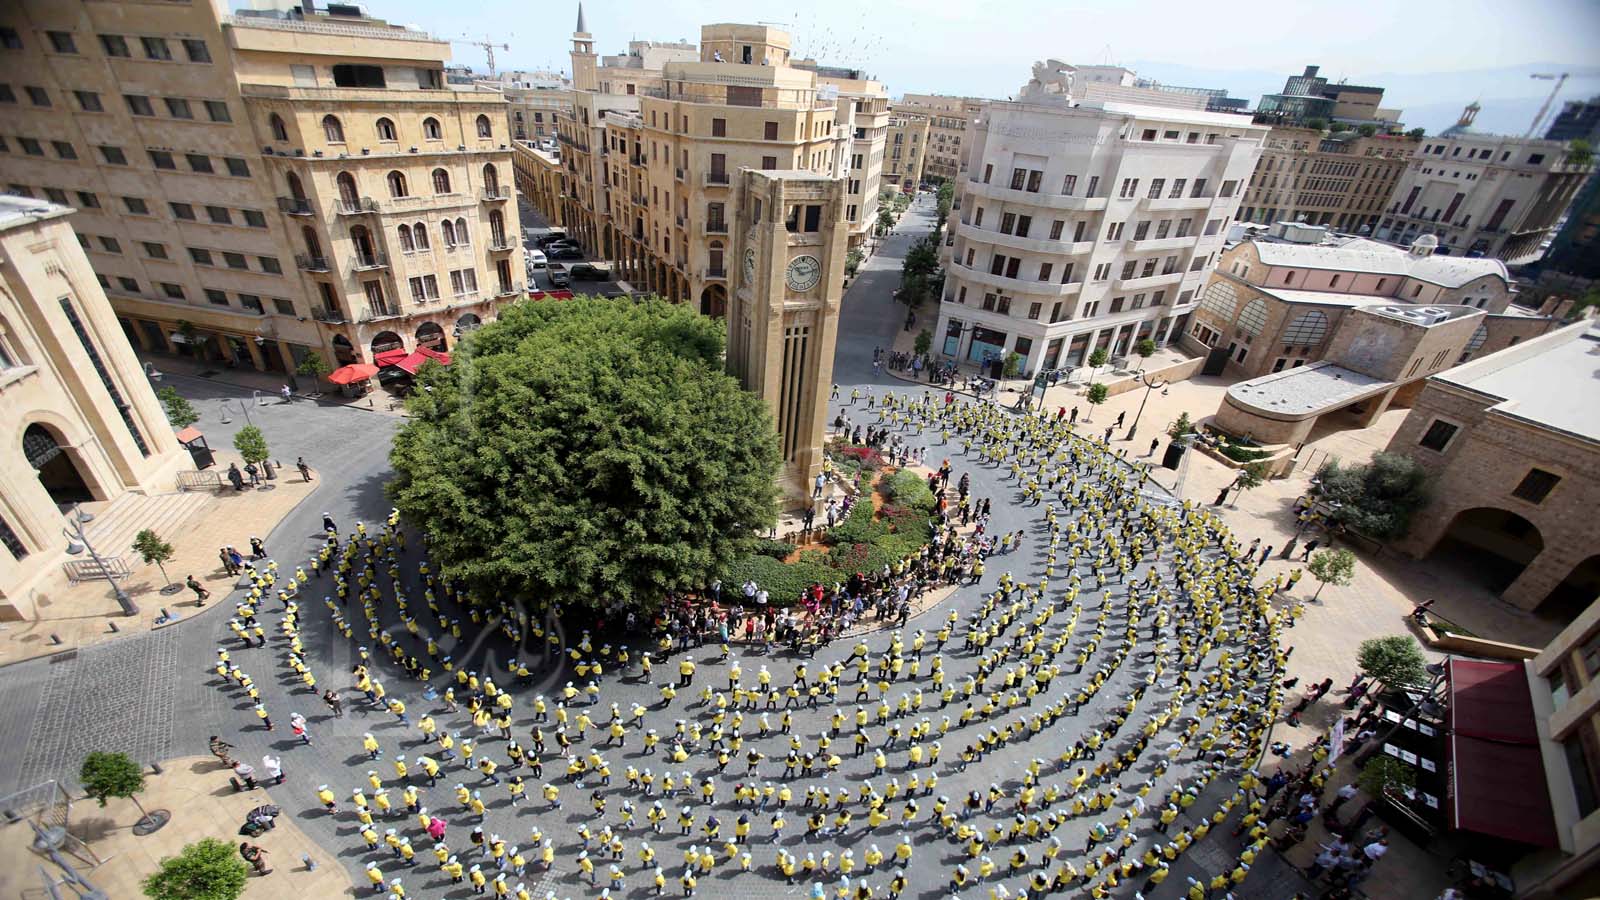 يوم الرقصة الكبيرة في ساحة النجمة في وسط بيروت ( عزيز طاهر)